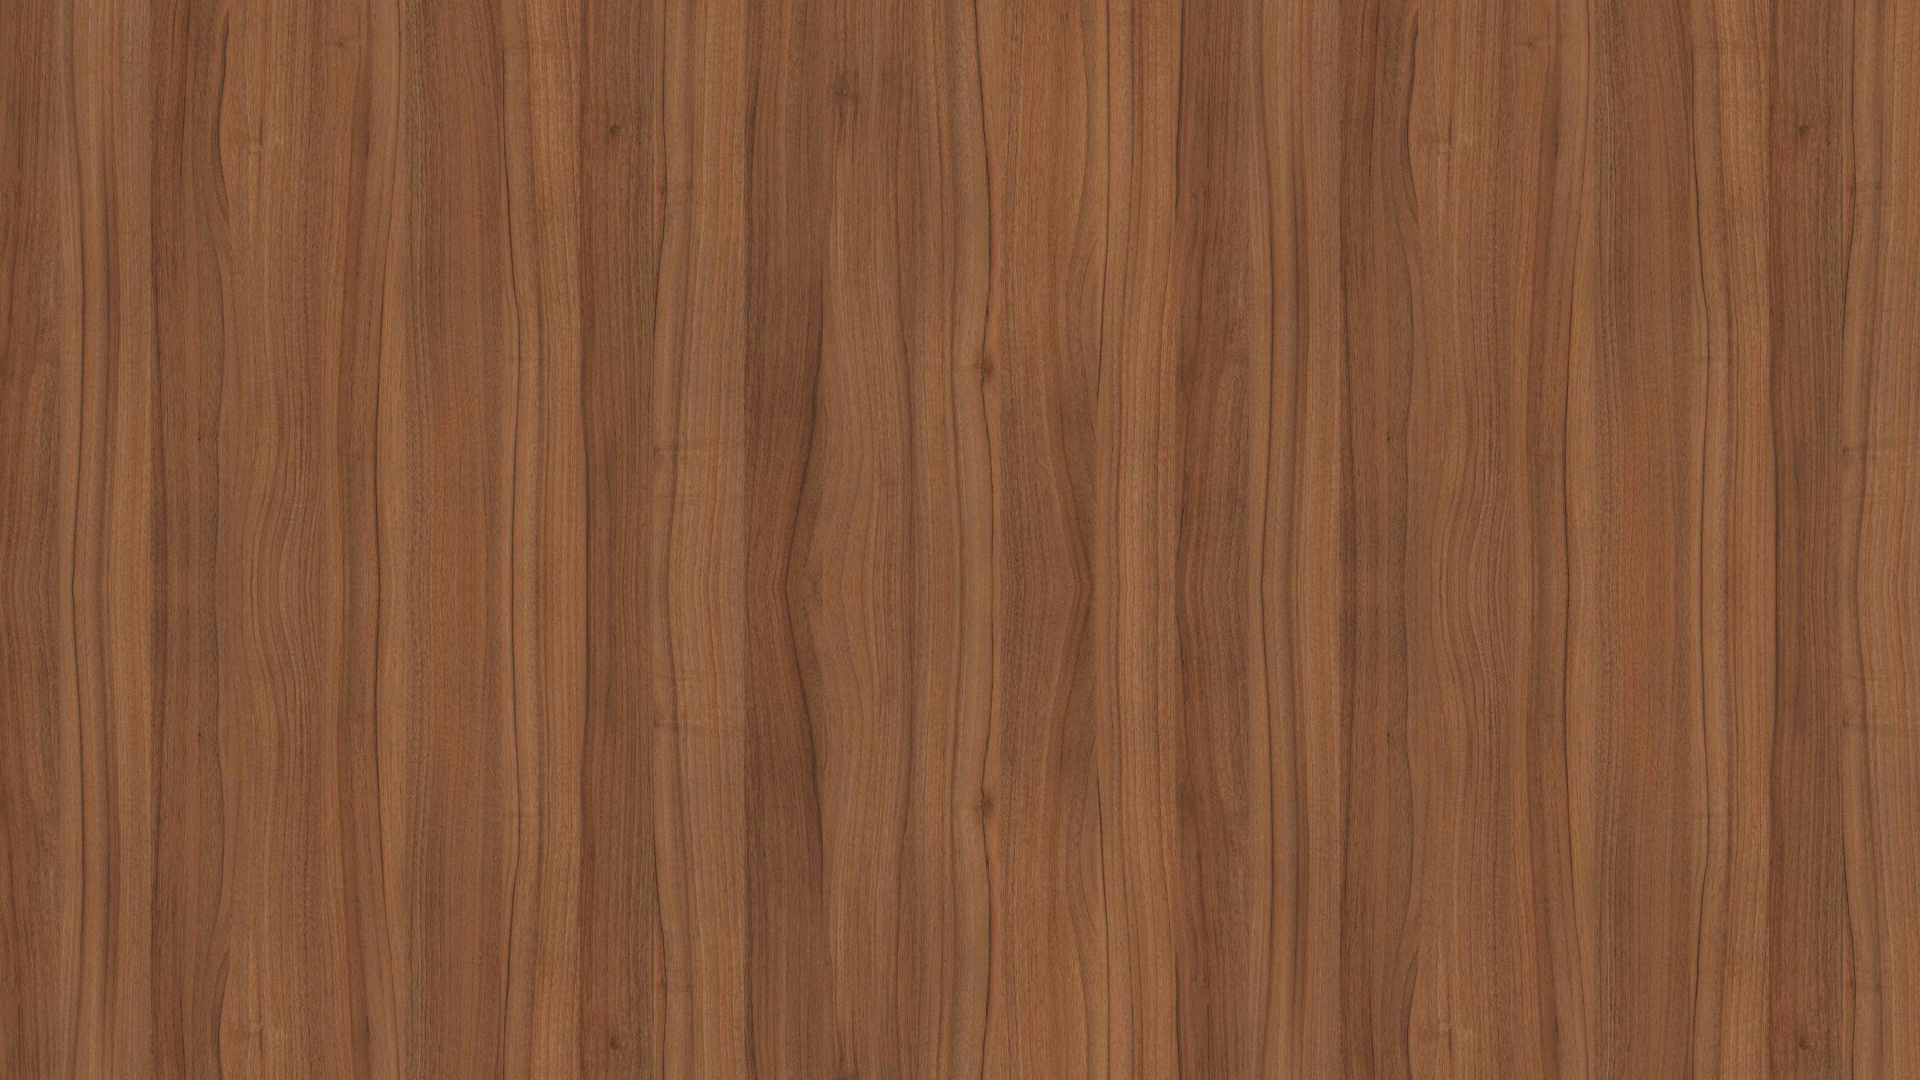 Brown Wooden Parquet Floor Tiles. Wallpaper in 1920x1080 Resolution